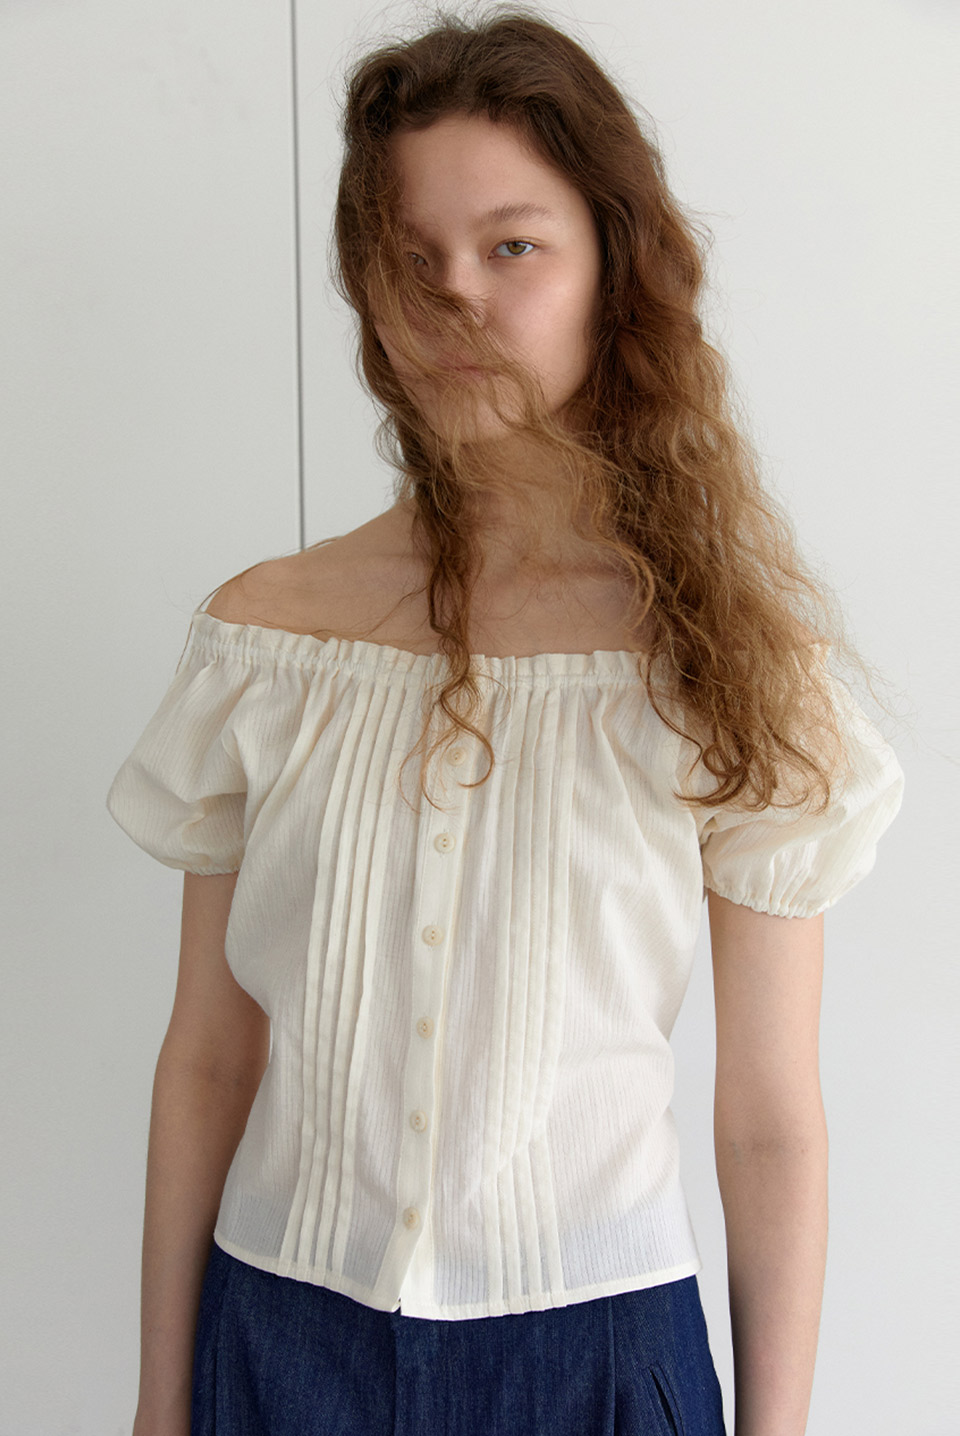 8th / pintuck shoulder blouse - creamBRENDA BRENDEN